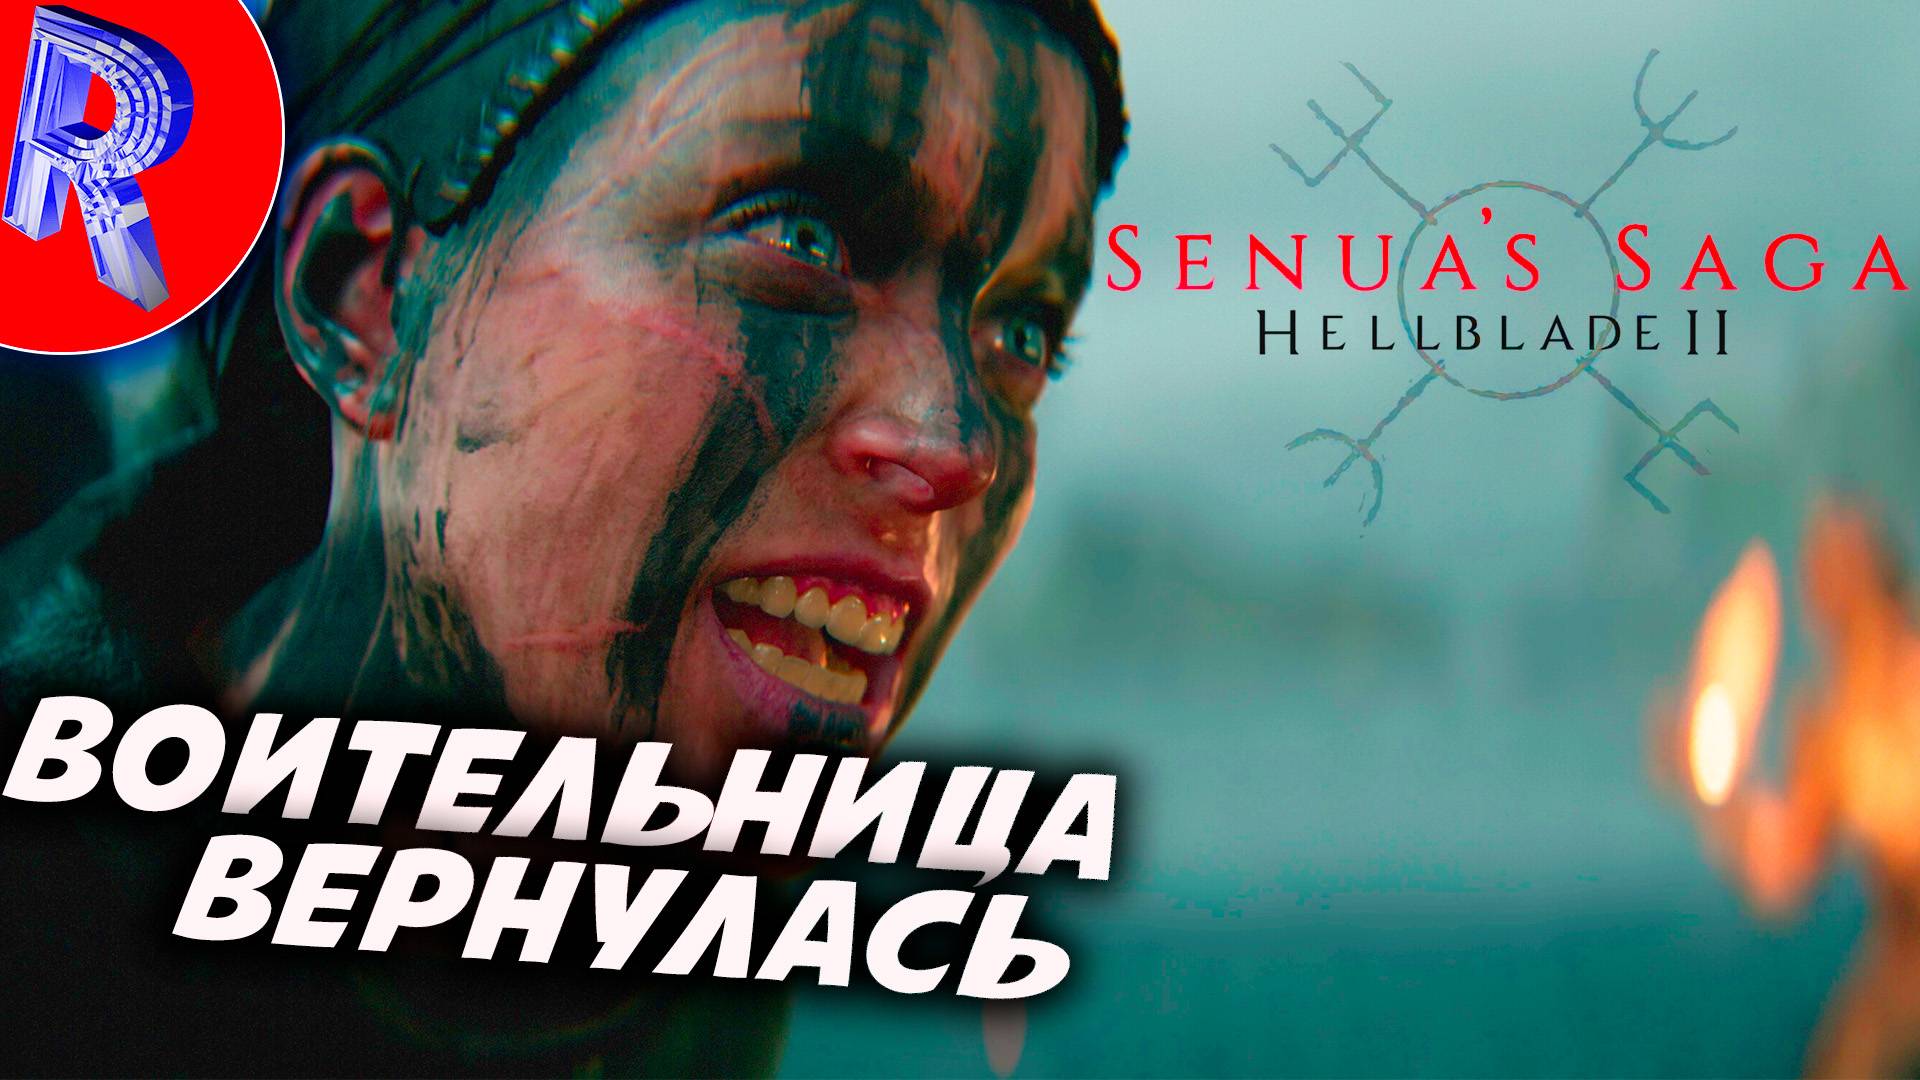 🎮СКАНДИНАВСКАЯ ВОИТЕЛЬНИЦА ВЕРНУЛАСЬ ▶ Senua’s Saga: Hellblade II  - Сага Сенуа: Адский клинок 2 #1